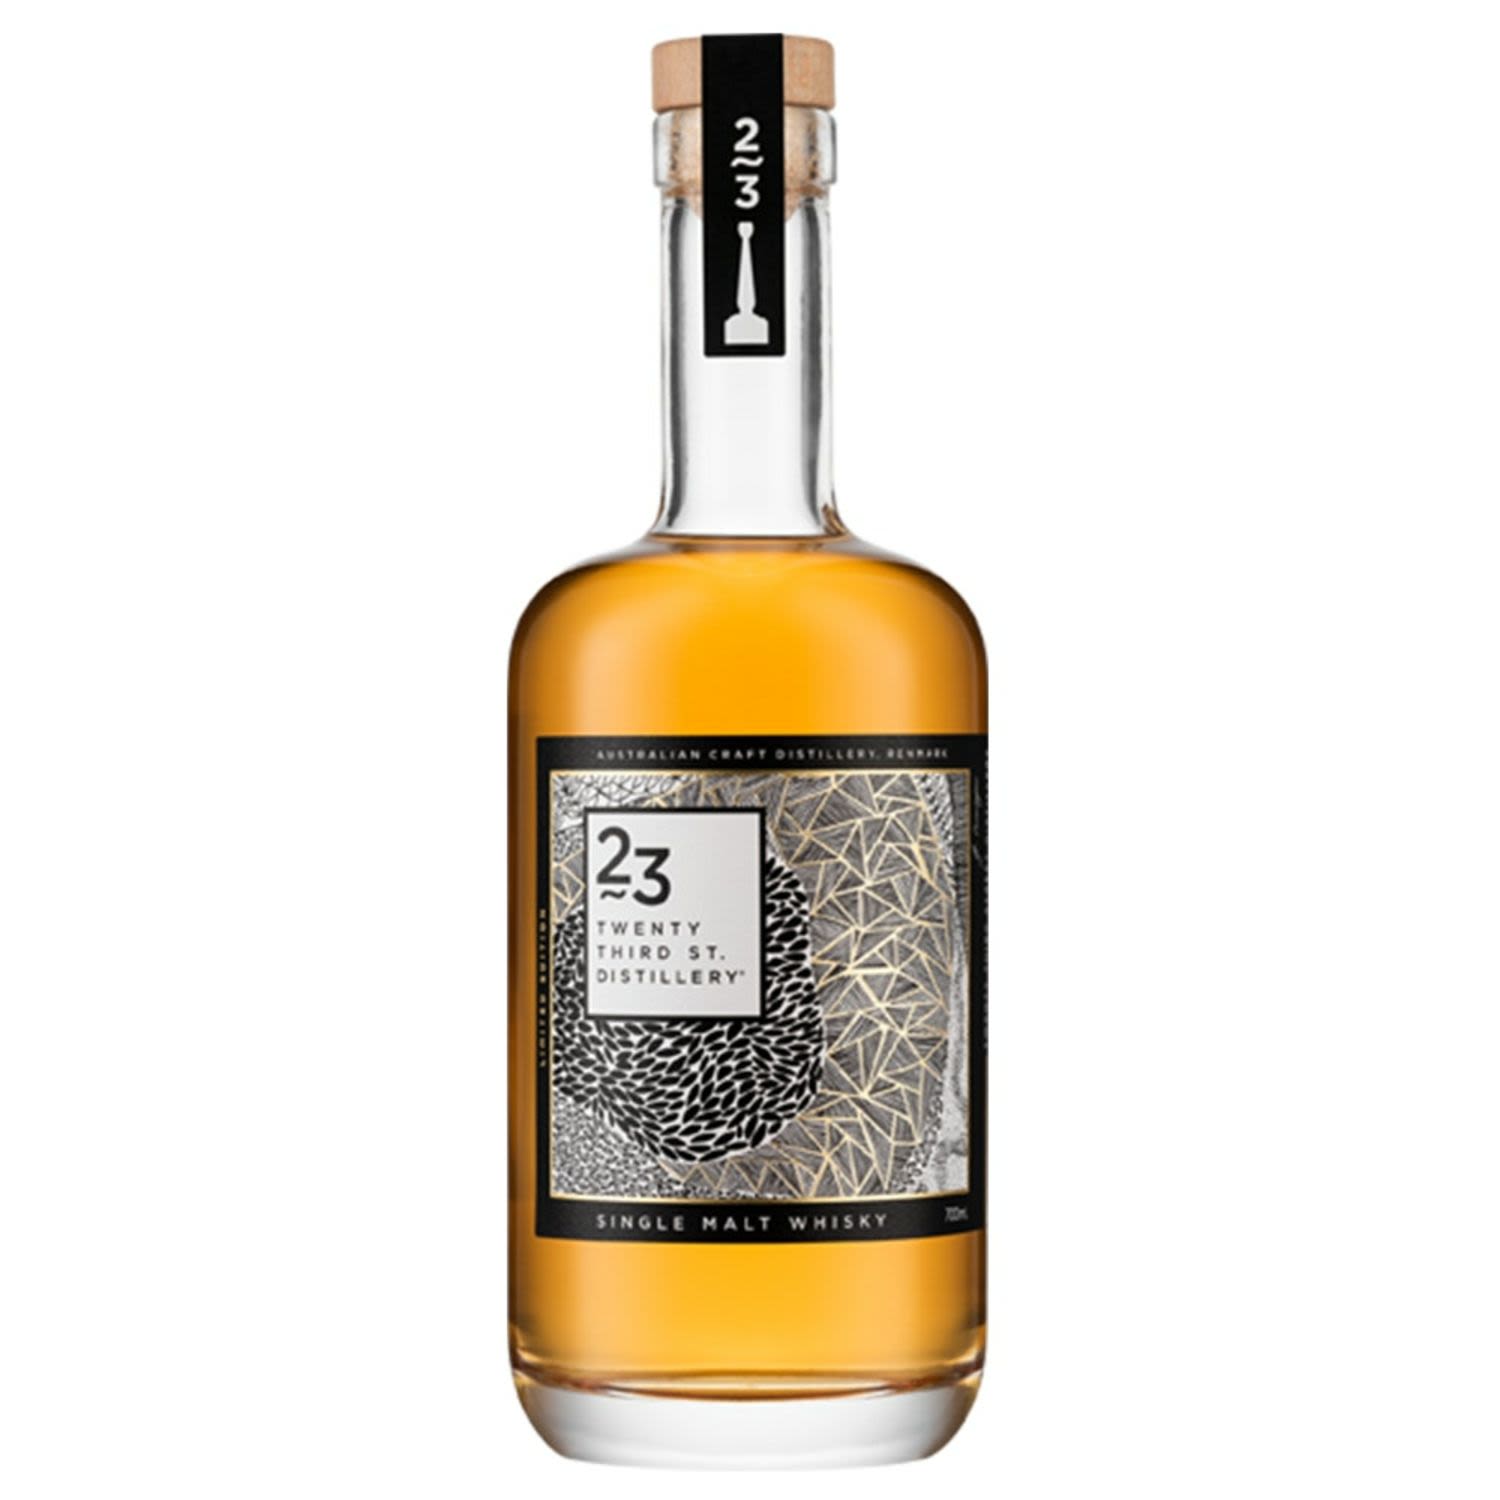 23rd Street Distillery Single Malt Whisky Bottle 700mL